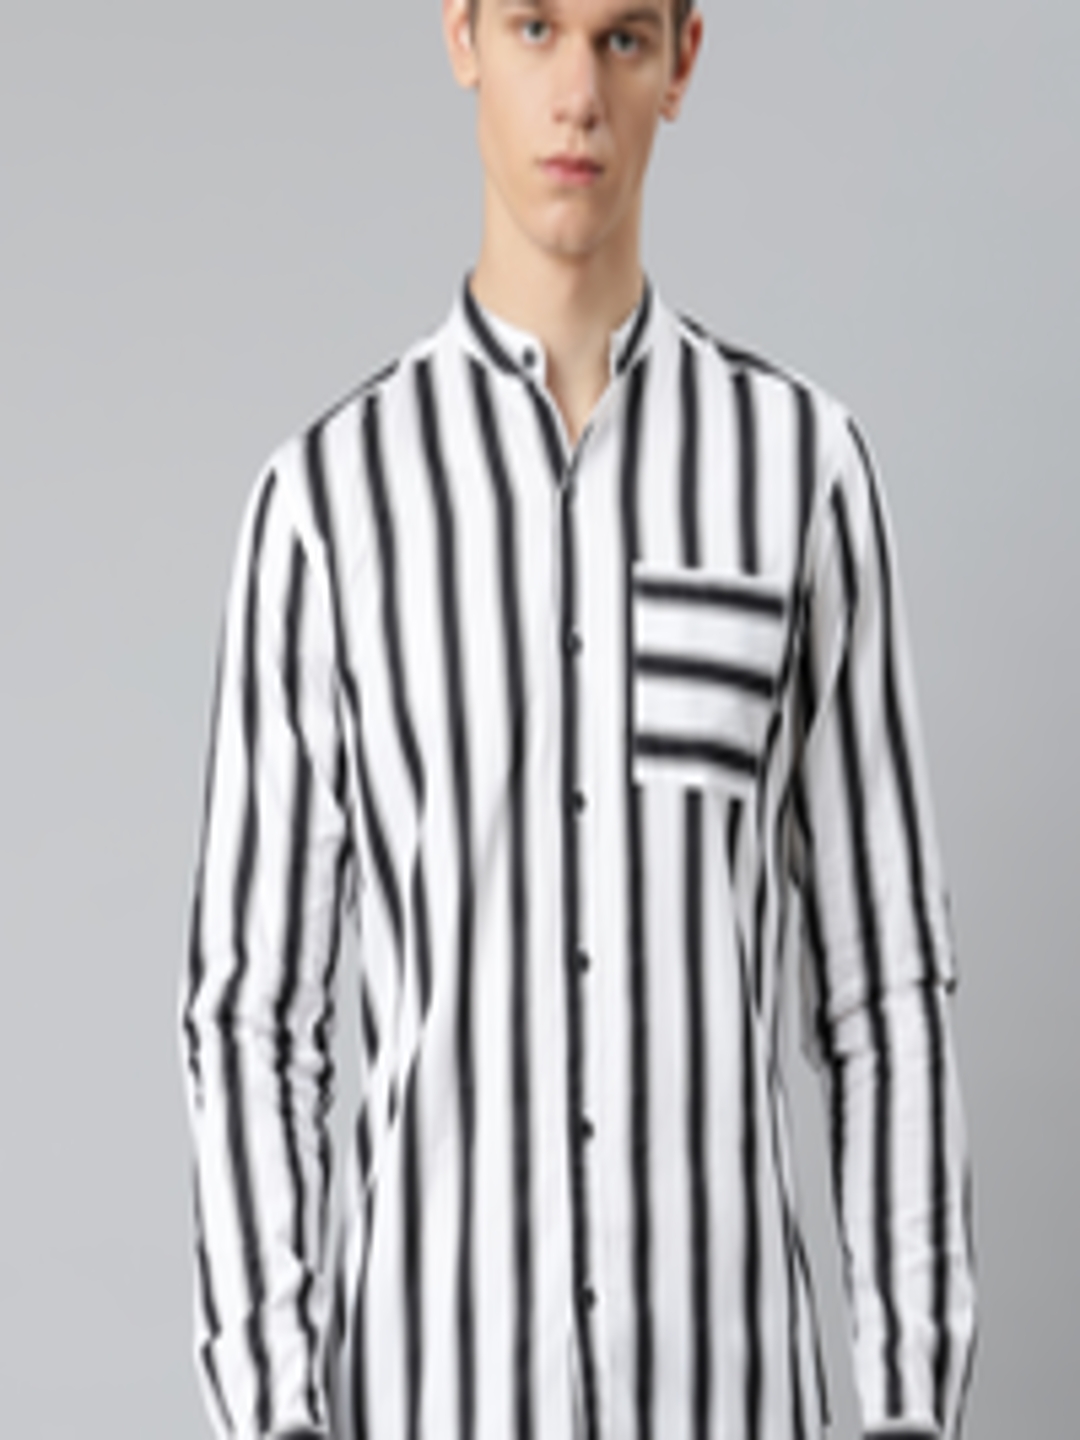 Buy Hubberholme Men White & Black Pure Cotton Striped Casual Shirt ...